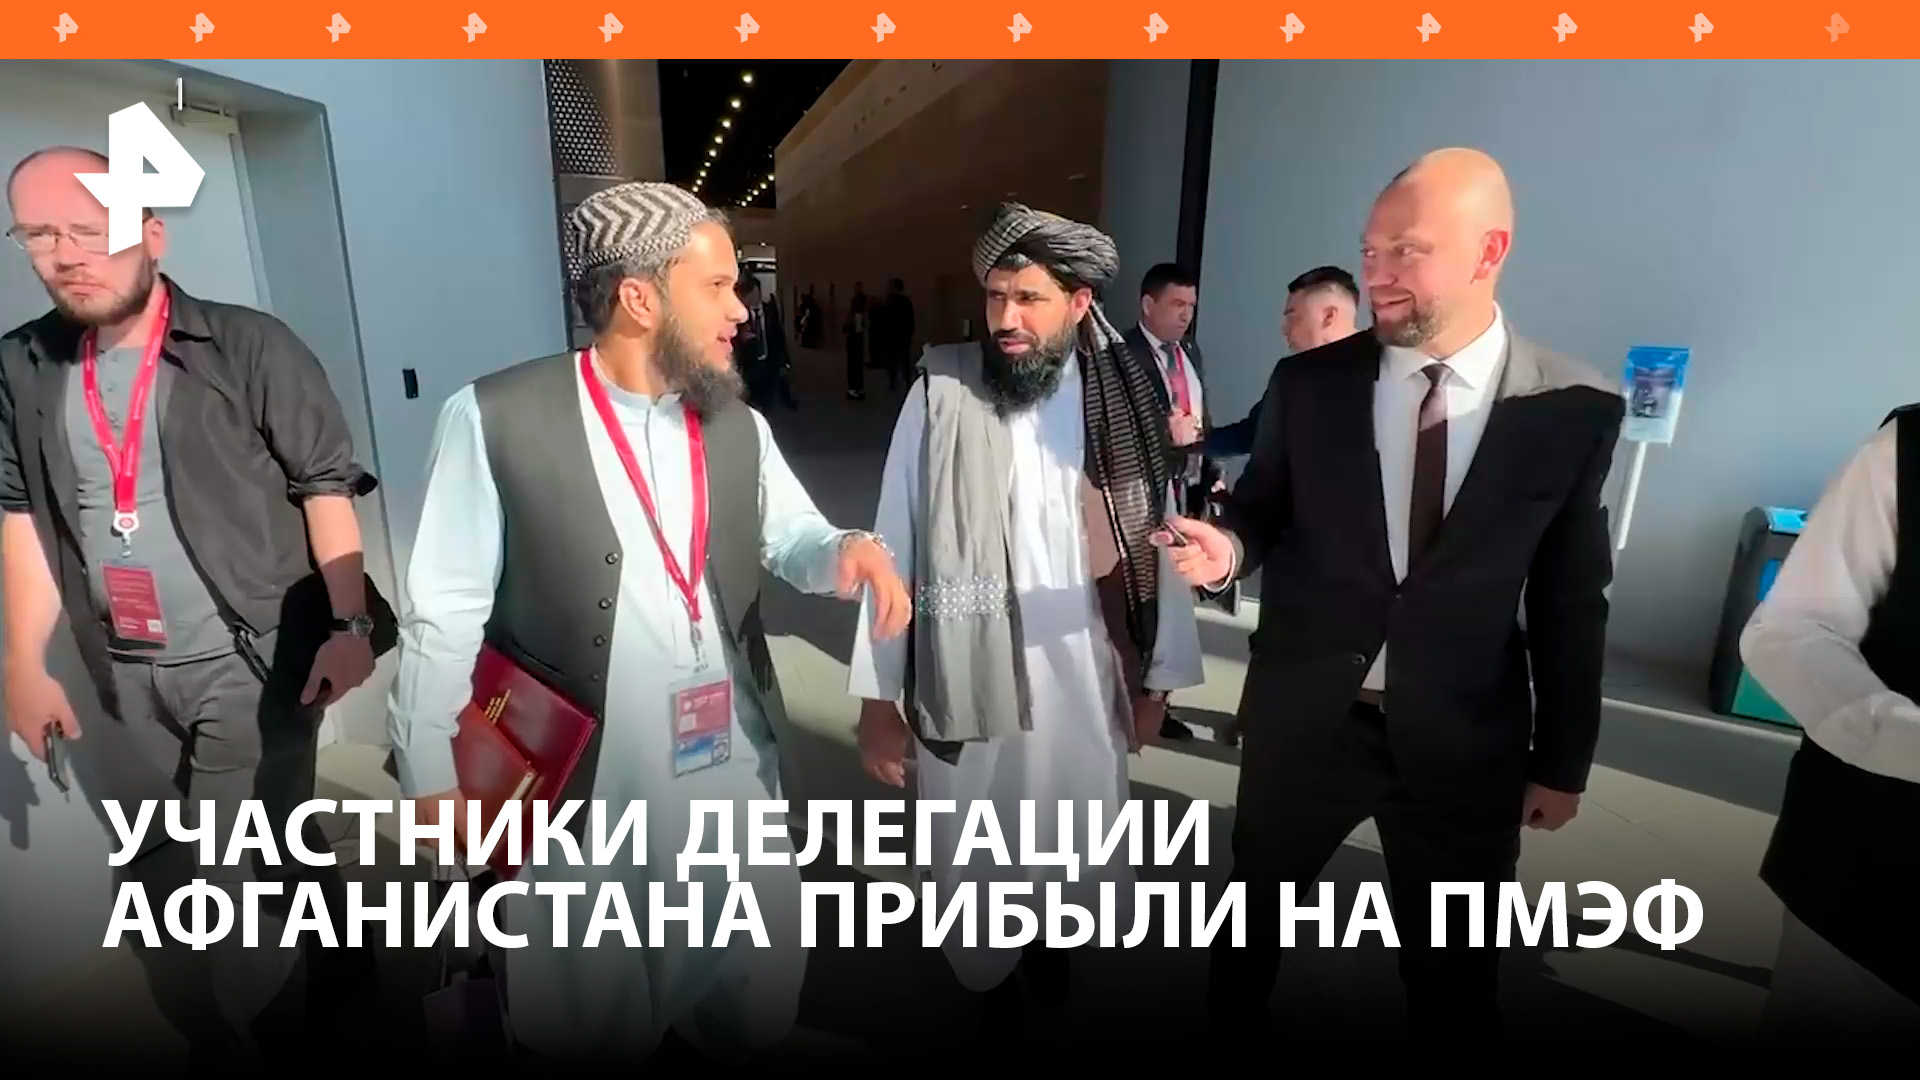 "Мы хотим расширить двусторонние отношения с Россией": делегация Афганистана прибыли на ПМЭФ